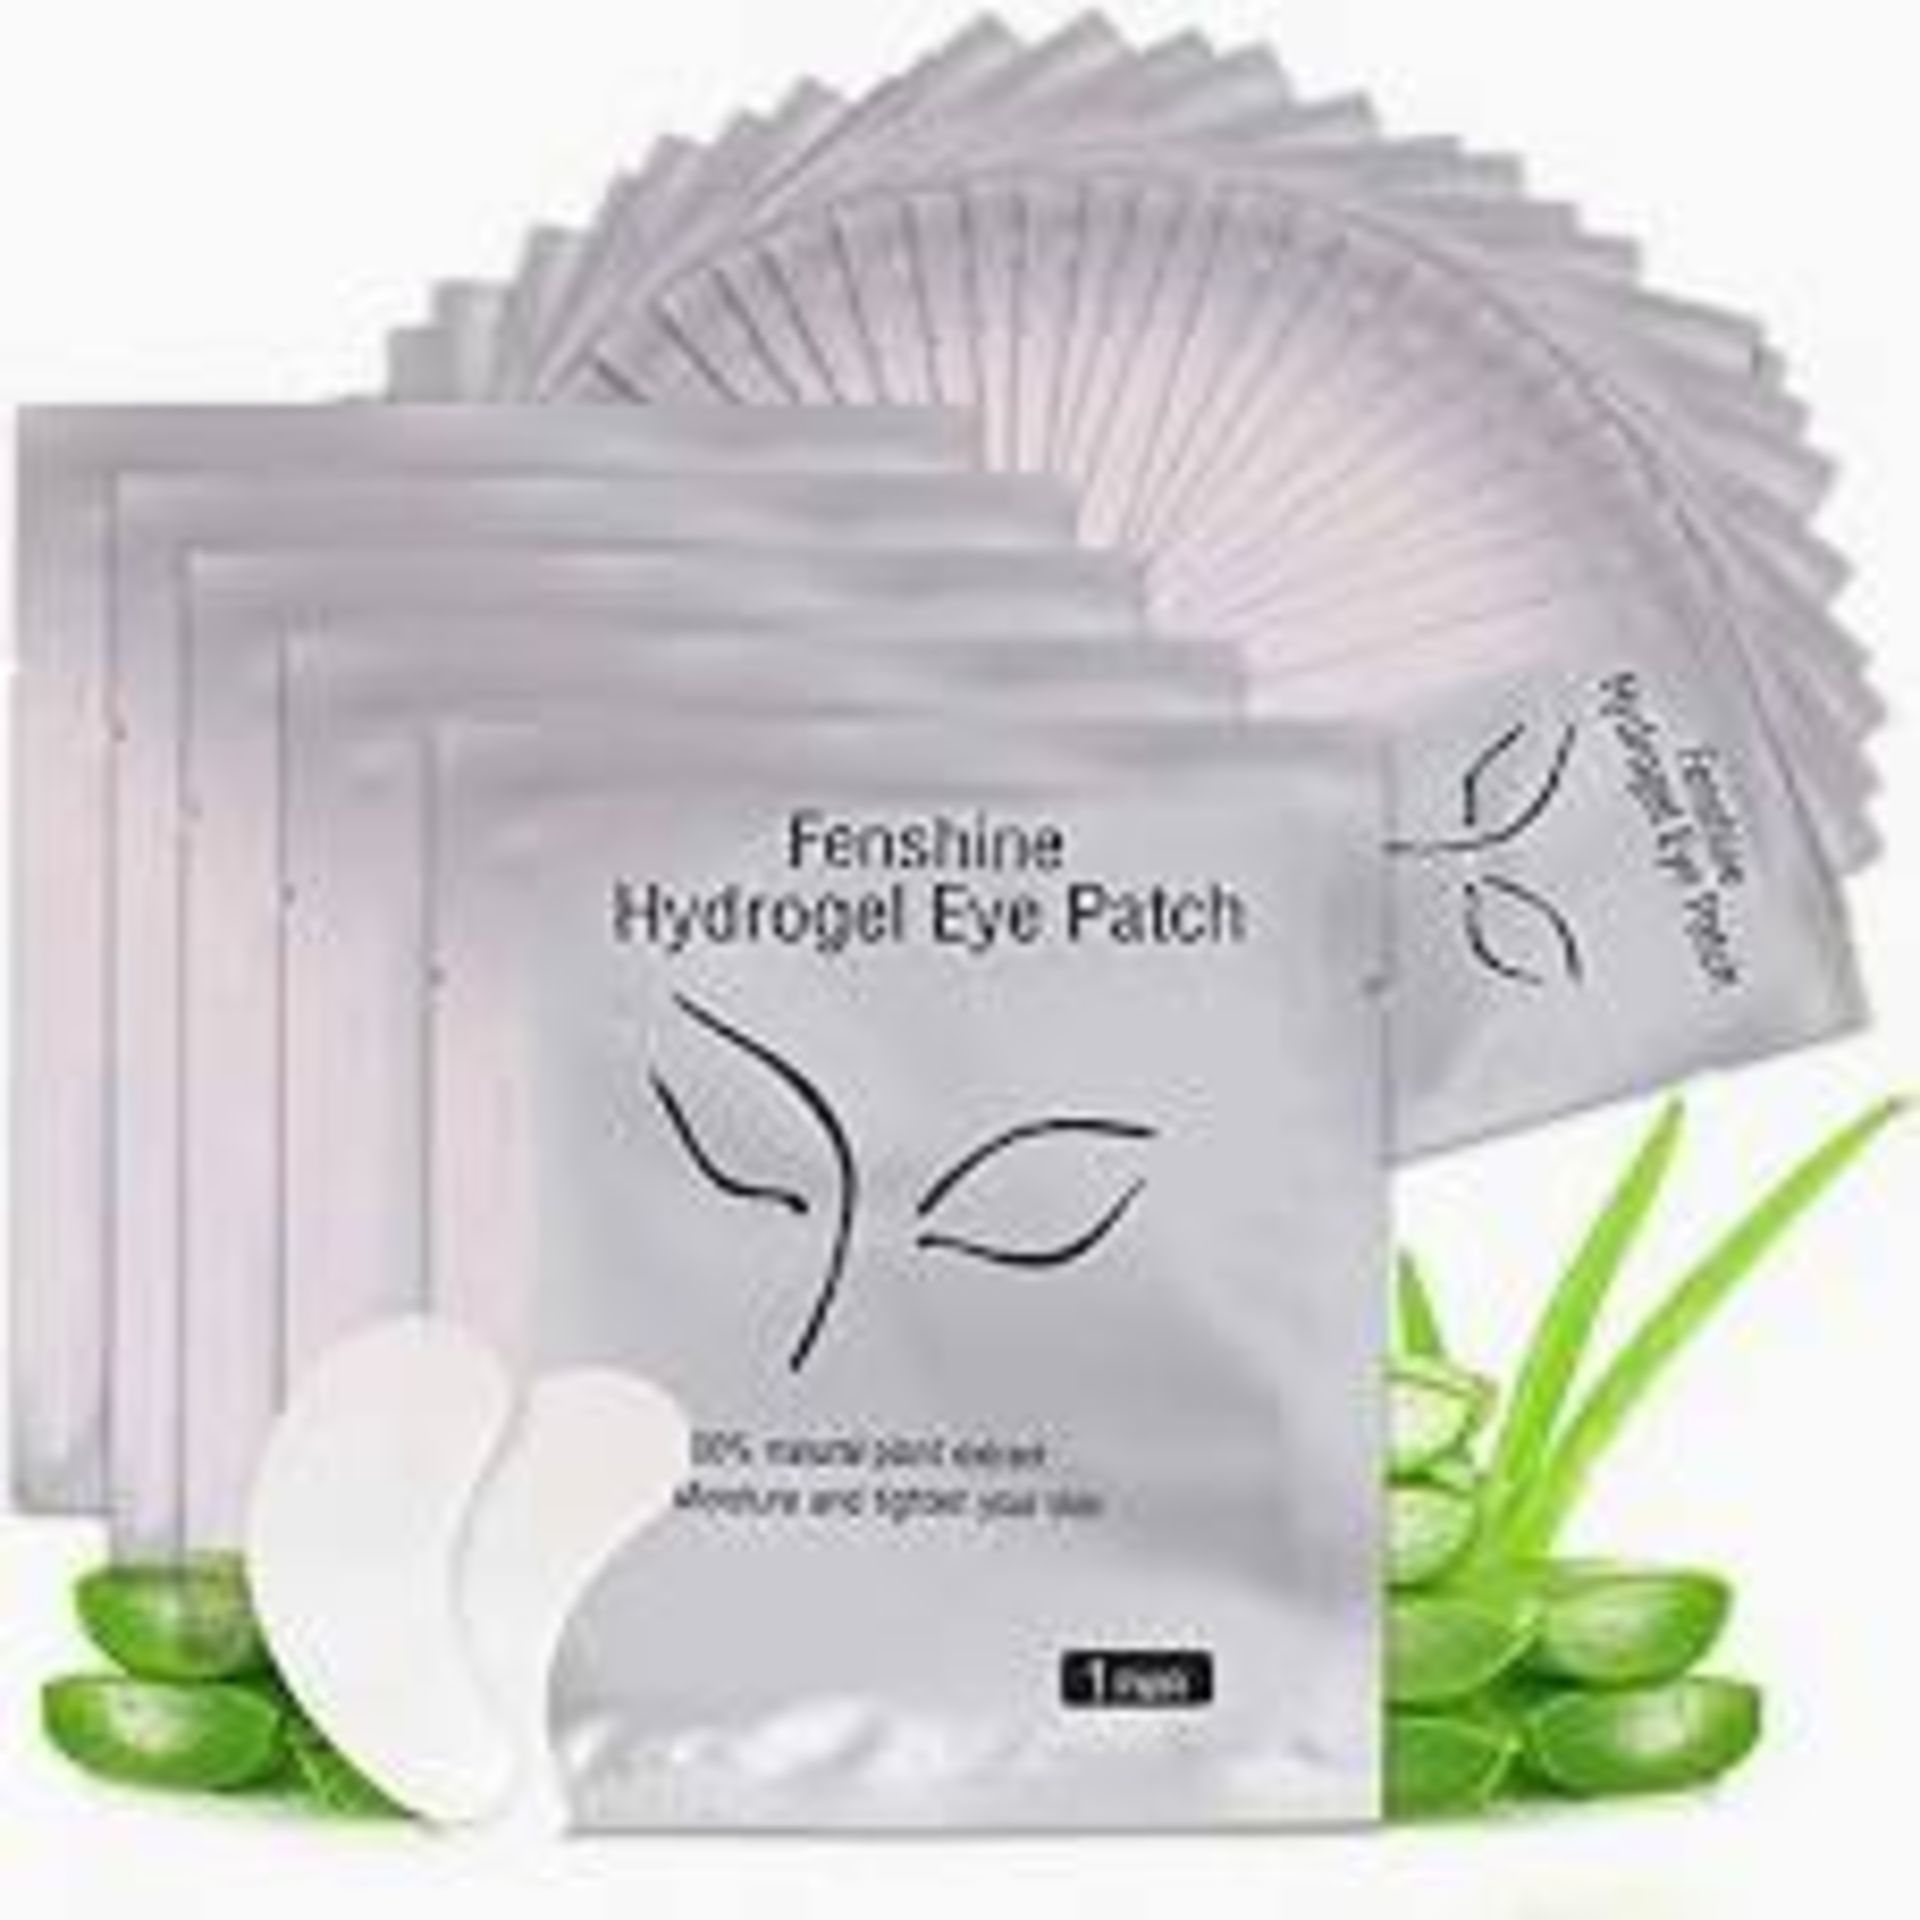 50Pairs Eyelash Extension Eye Pads Lint Free Hydrogel Eye Patch/Lash Extensions Eye Gel Pads, Pro...